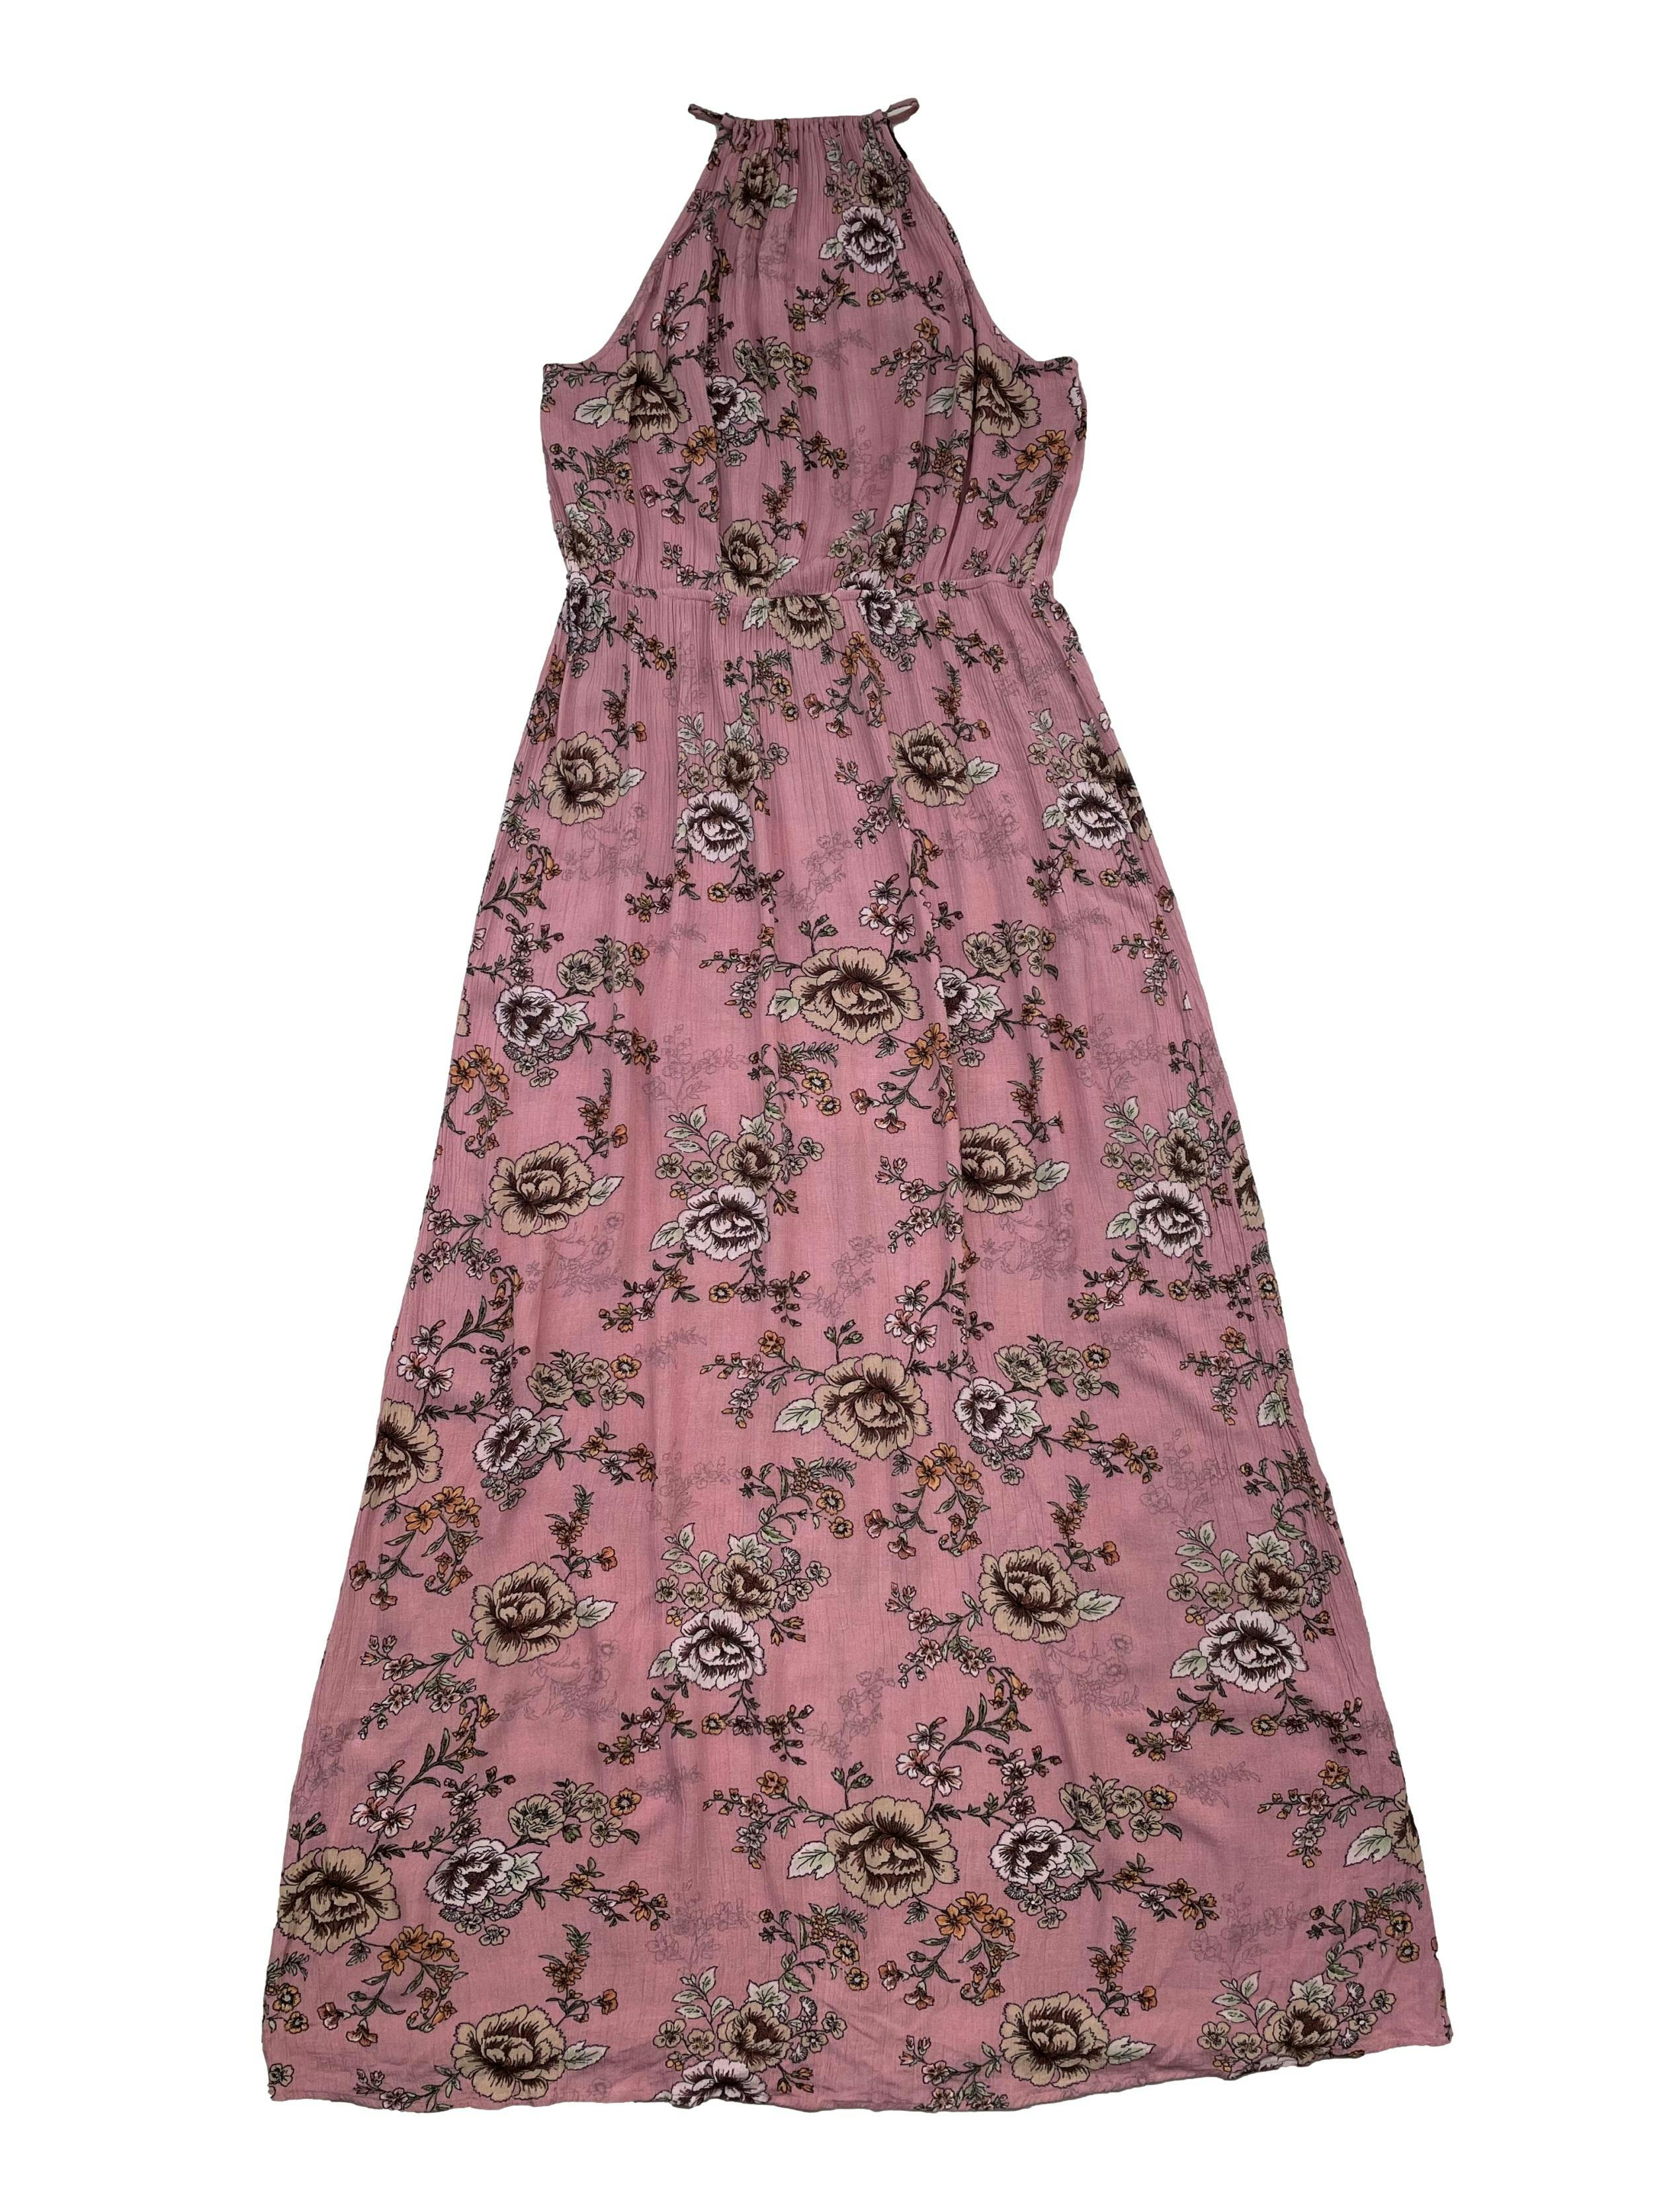 Vestido Forever21 de rayón palo rosa con flores, se amarra en el cuello, cintura elástica. Busto 100cm Largo 130cm